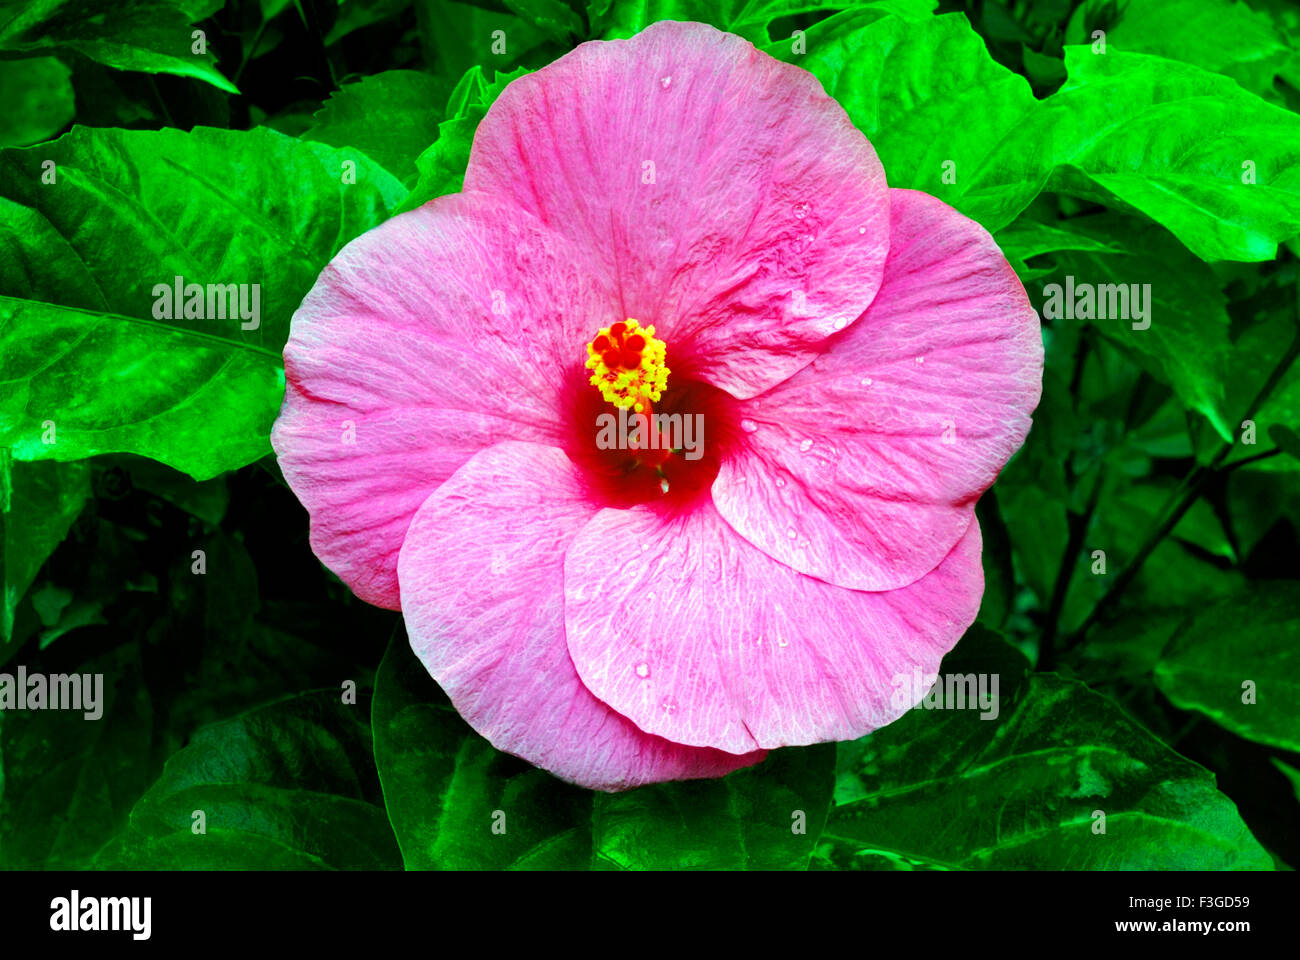 Hibiscus violet variation ; Trivandrum ; Kerala ; India Stock Photo